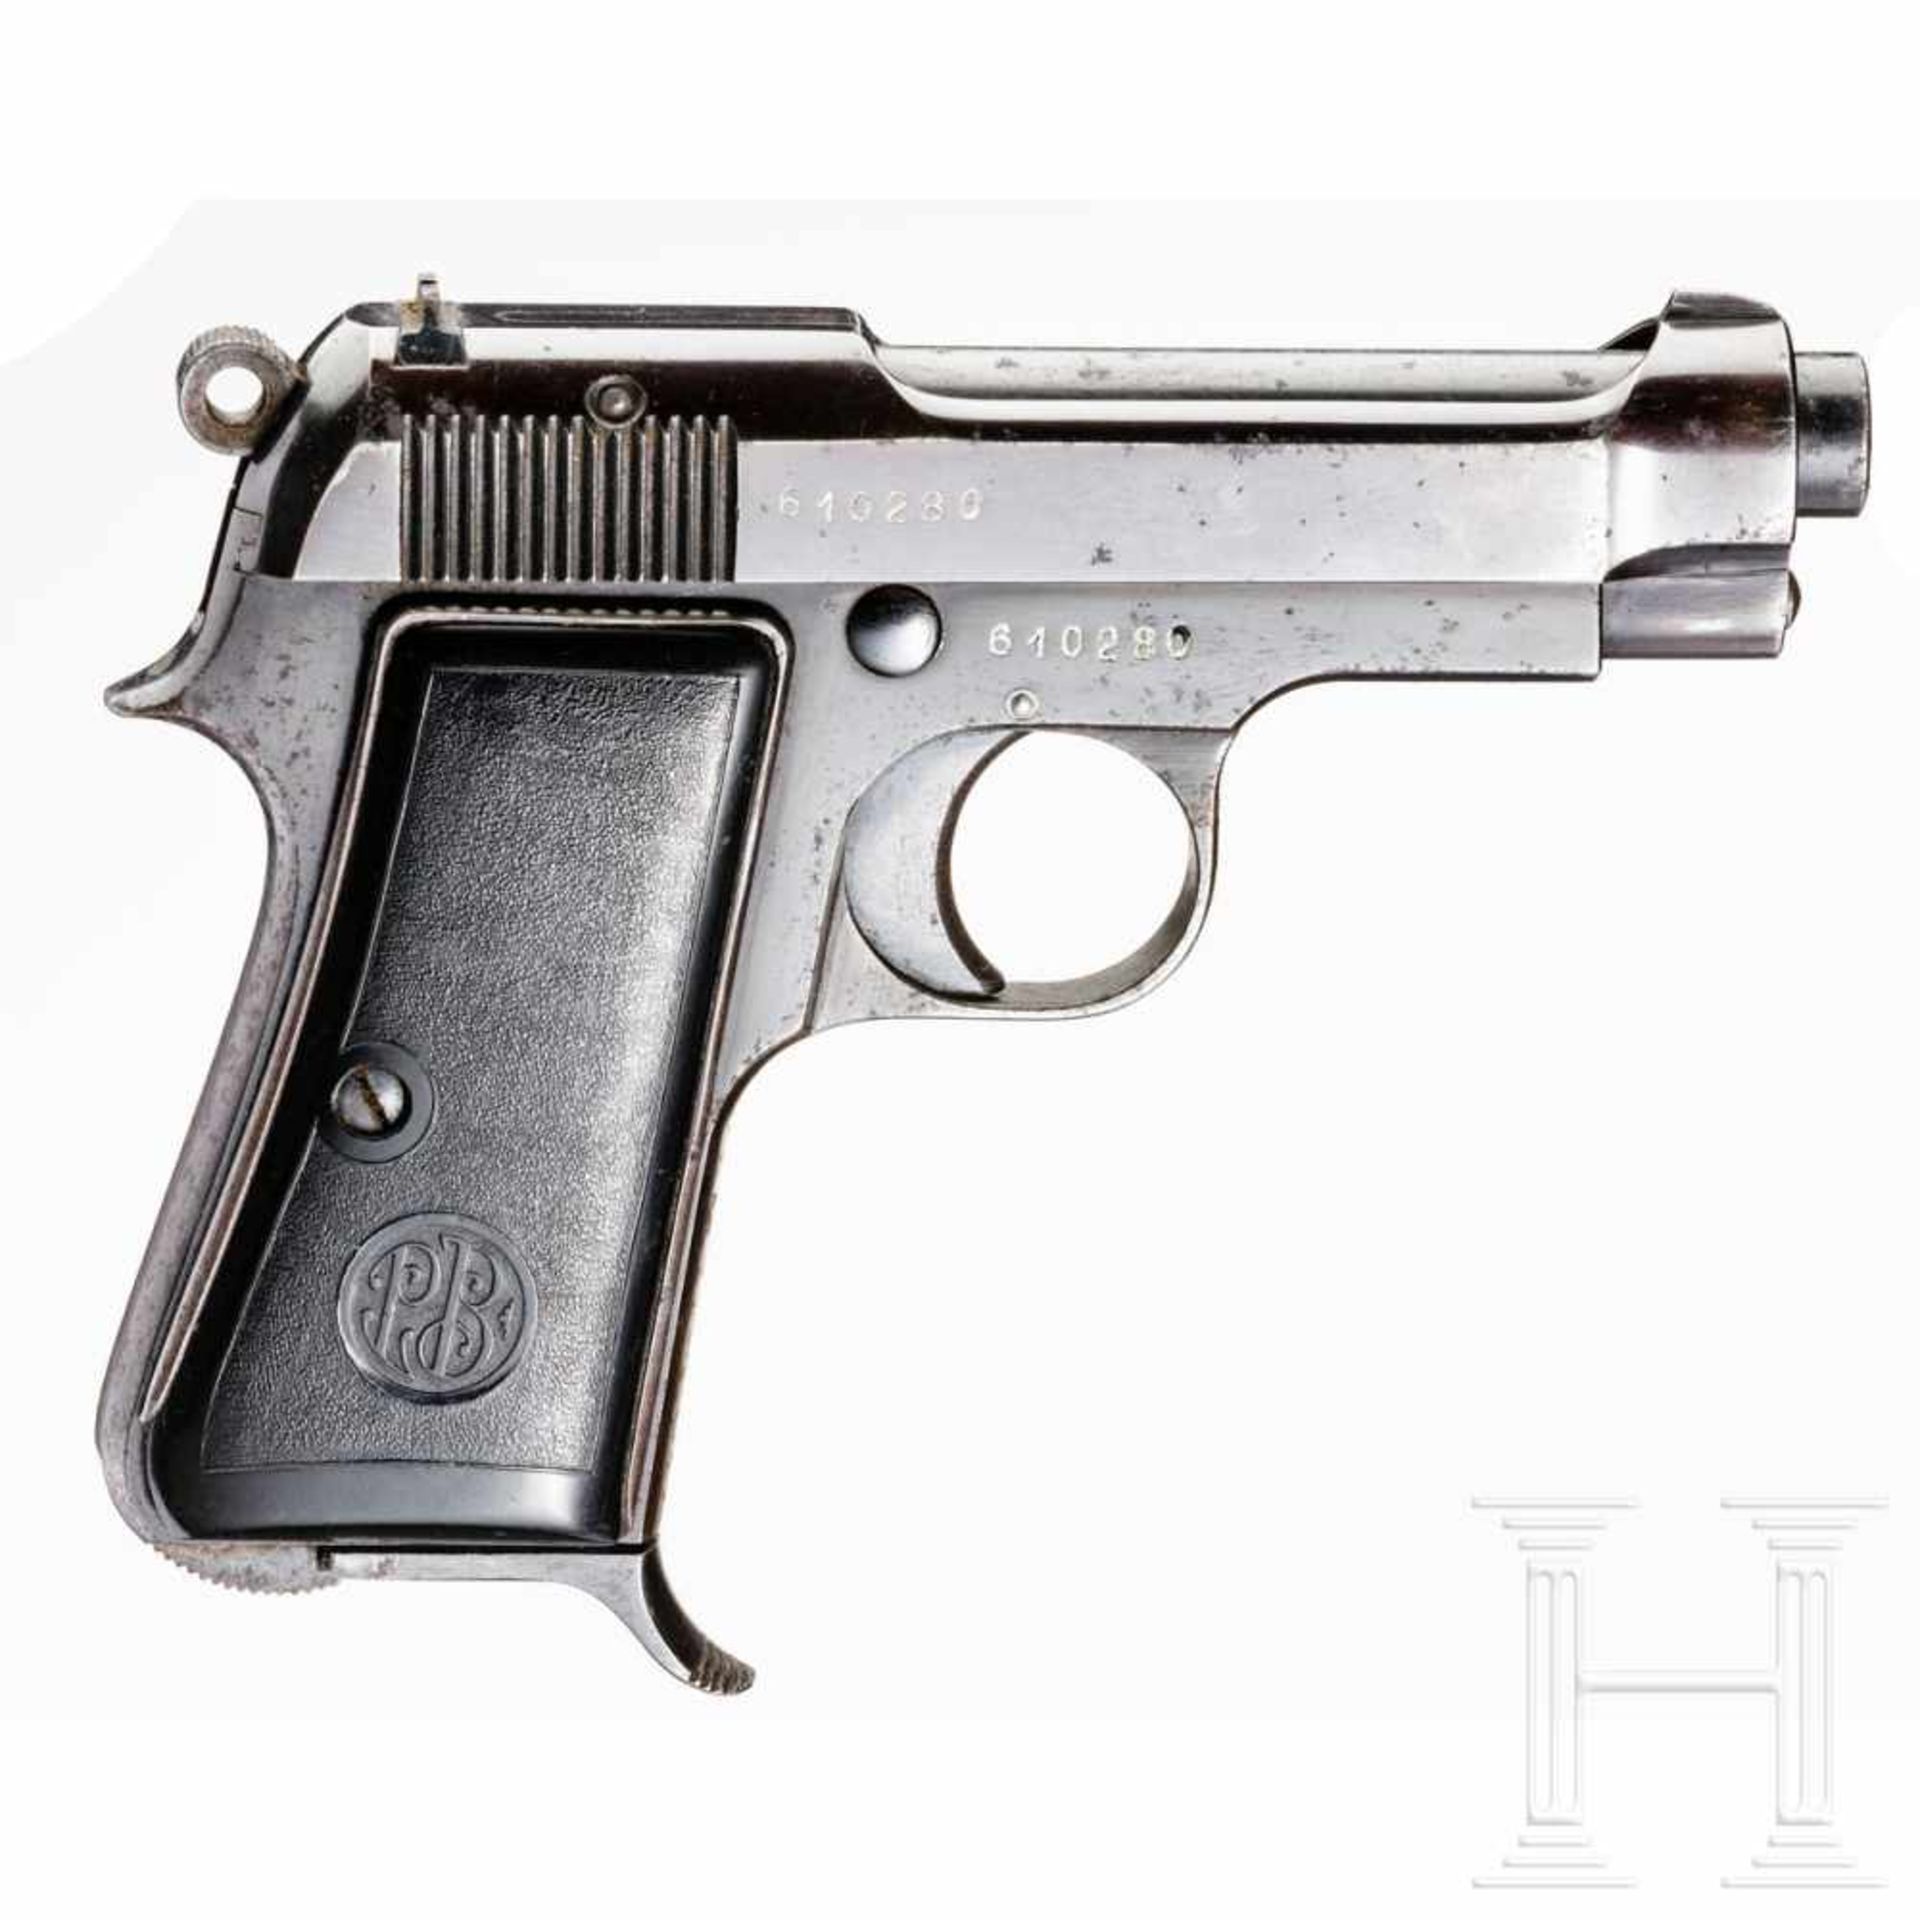 Beretta Mod. 34, mit TascheKal. 9 mm Brown. kurz, Nr. 610280. Nummerngleich. Lauf leicht matt. - Bild 2 aus 3